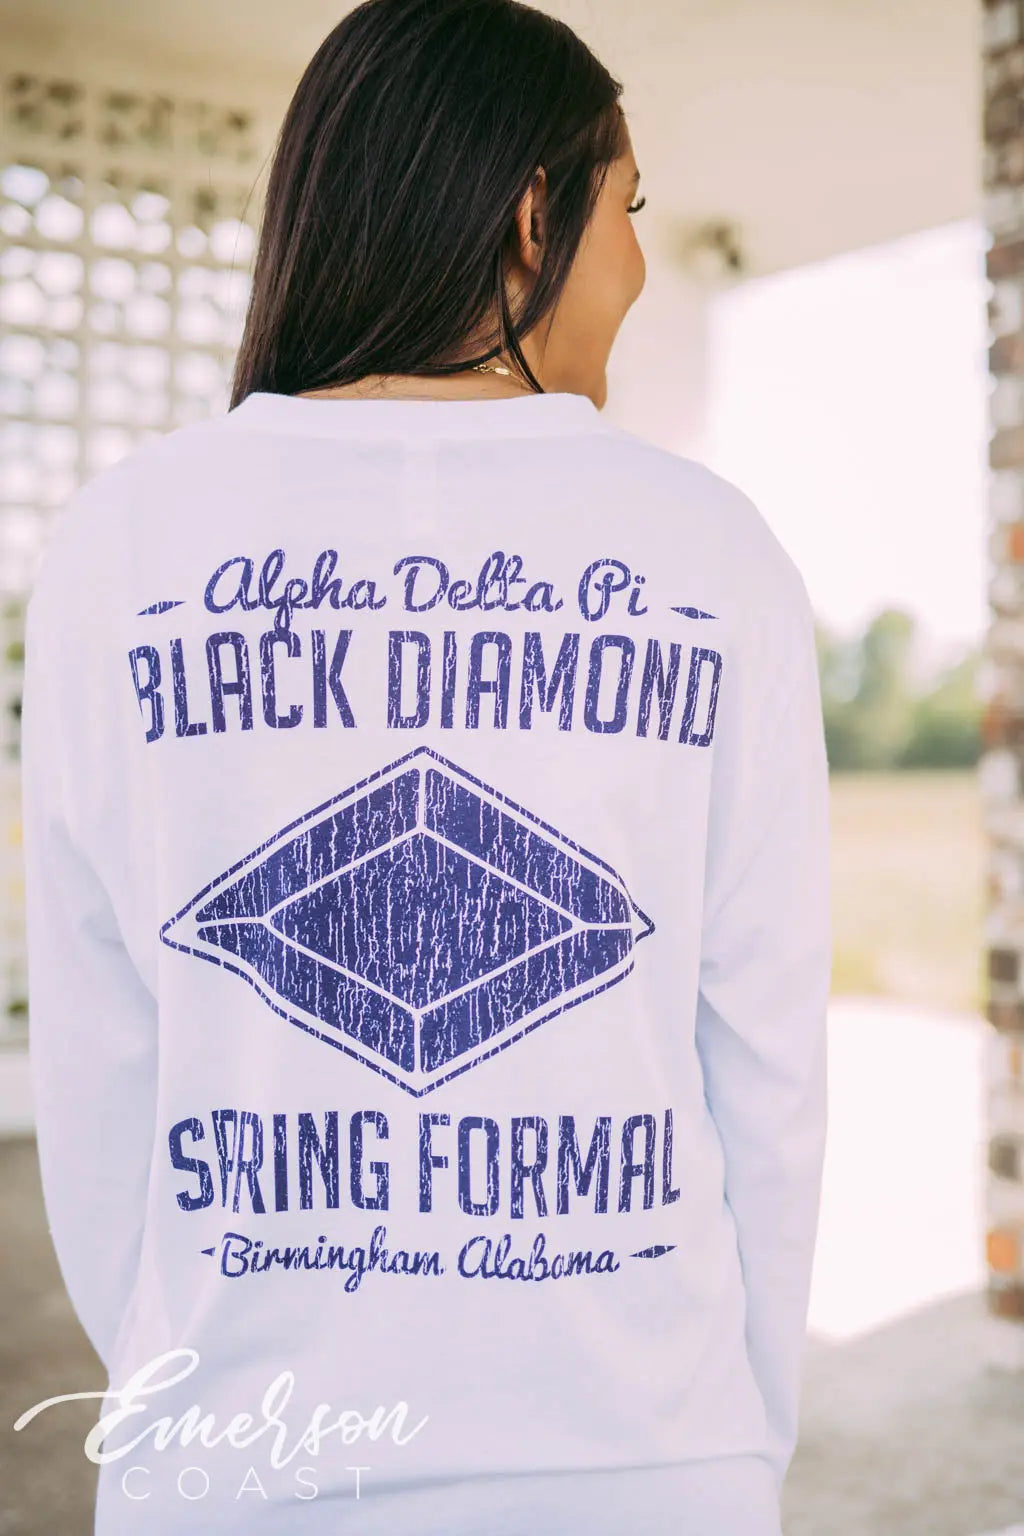 Alpha Delta Pi Black Diamond Formal Long Sleeve